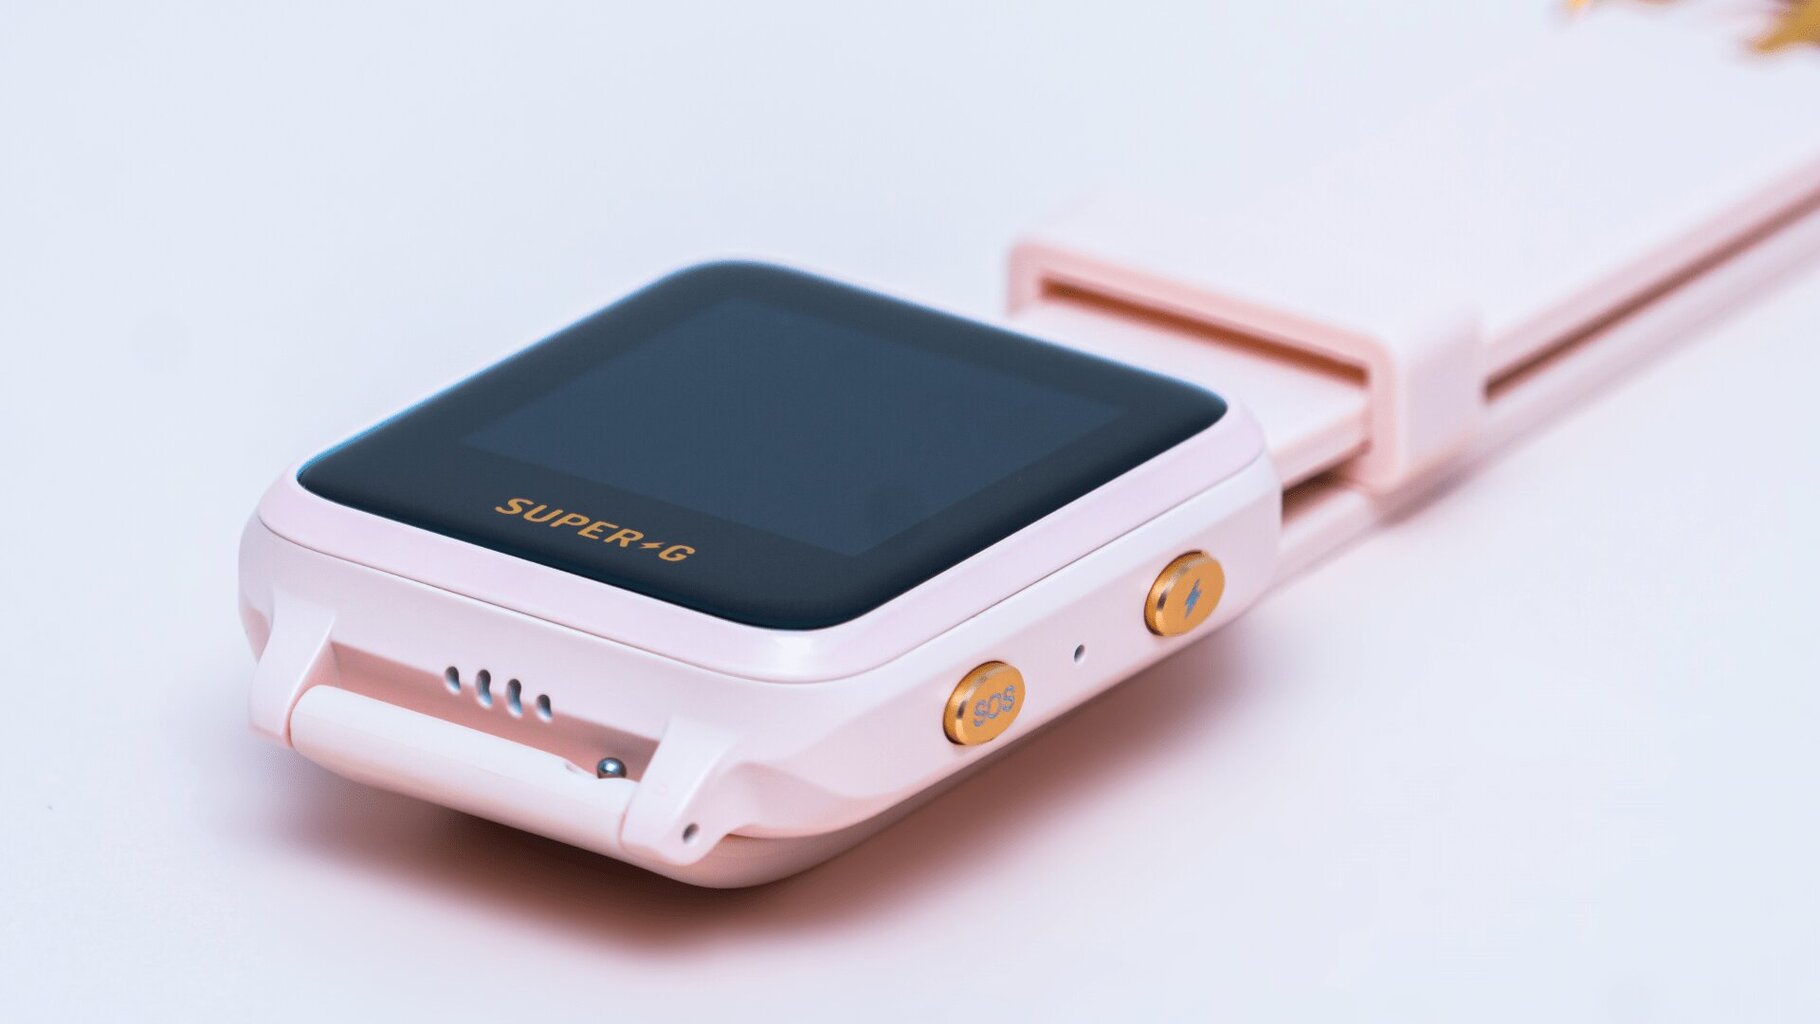 Gudrutis Super-G Active Blush Pink kaina ir informacija | Išmanieji laikrodžiai (smartwatch) | pigu.lt